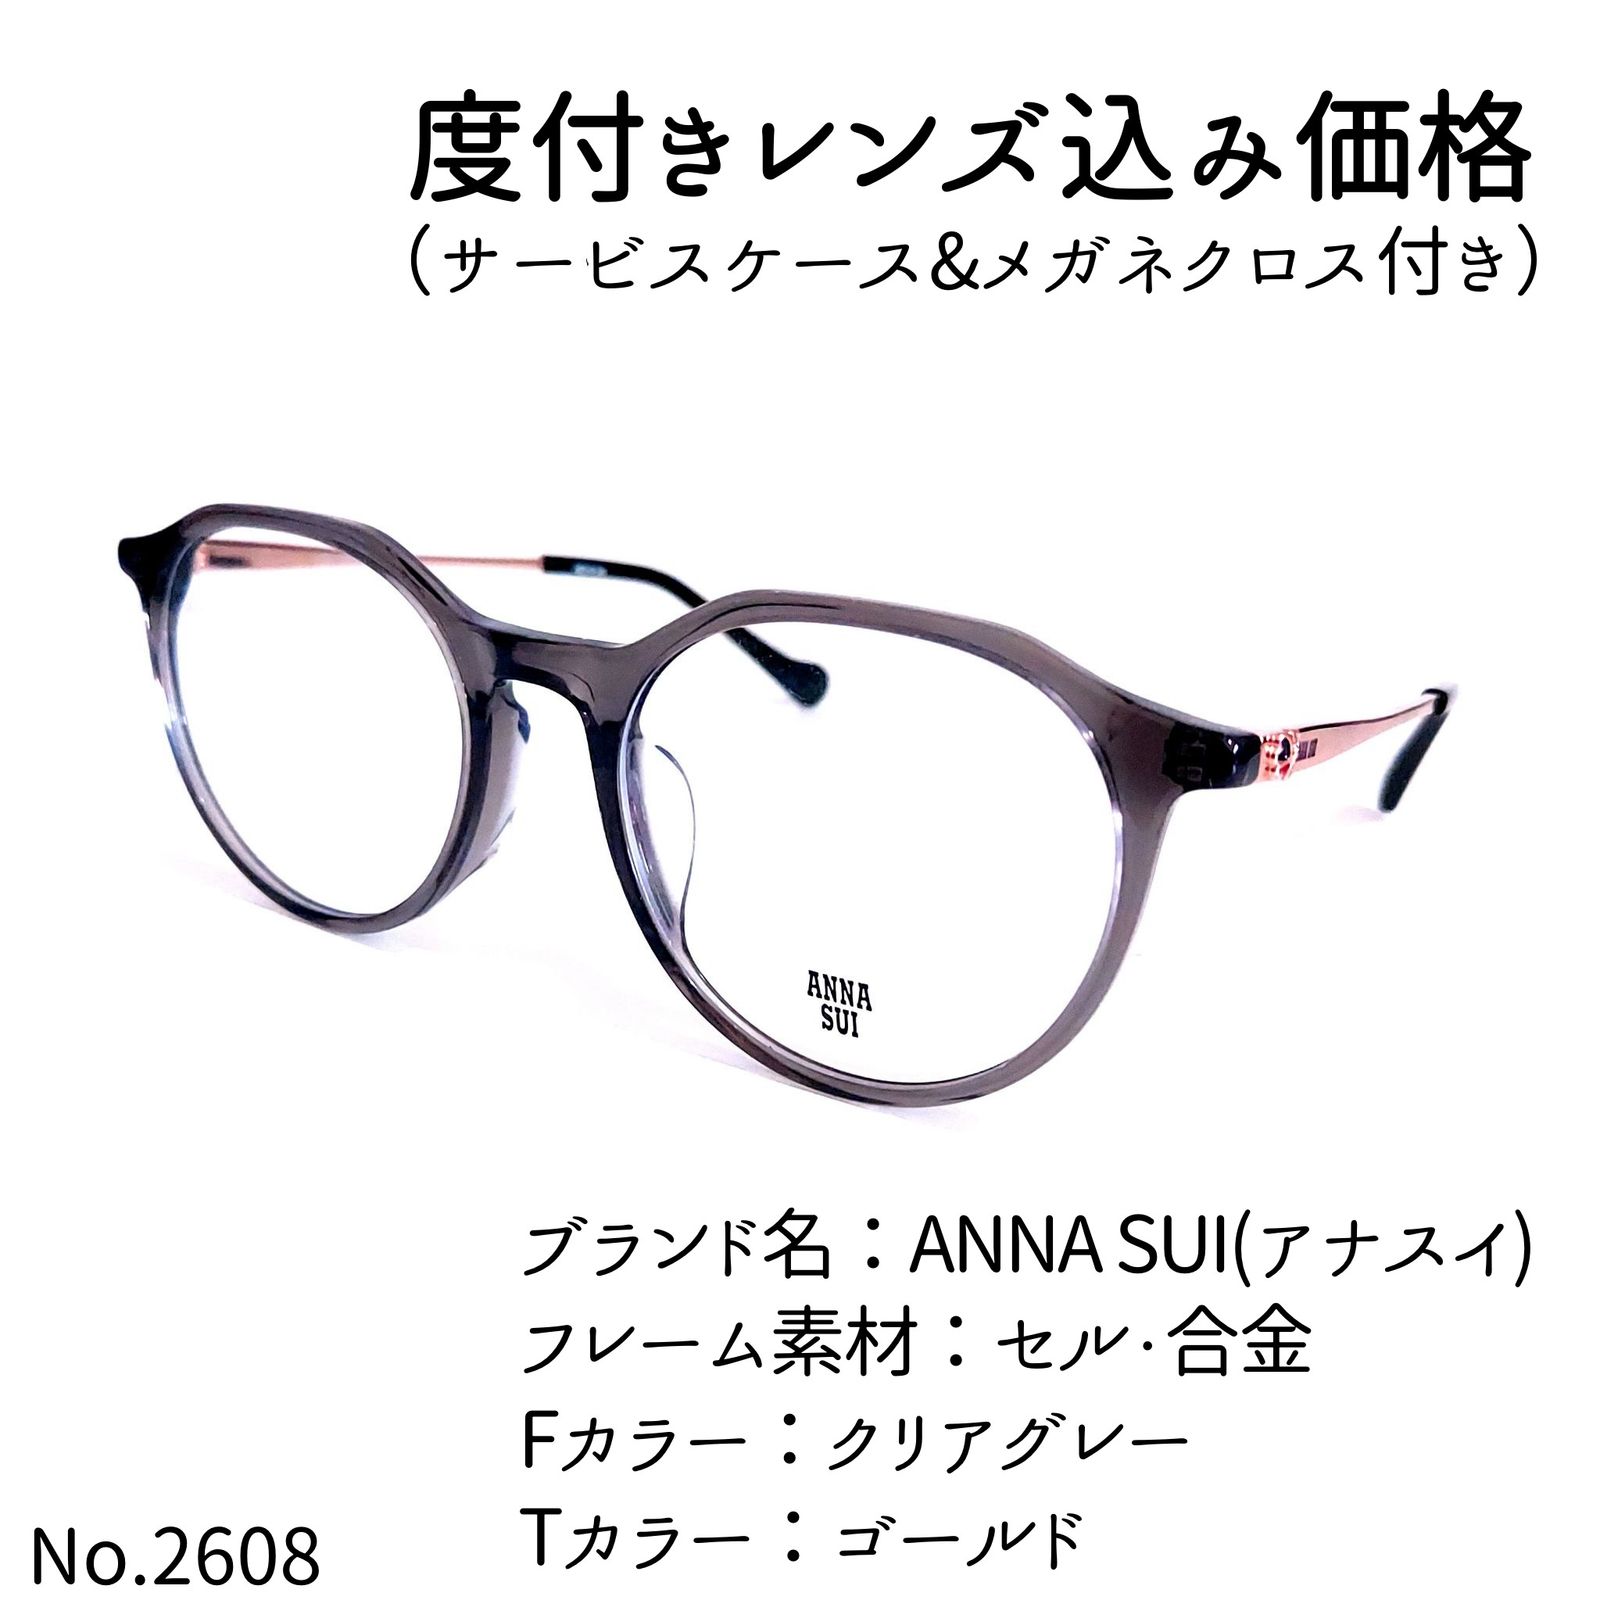 No.2608メガネ ANNA SUI(アナスイ)【度数入り込み価格】 - メルカリ